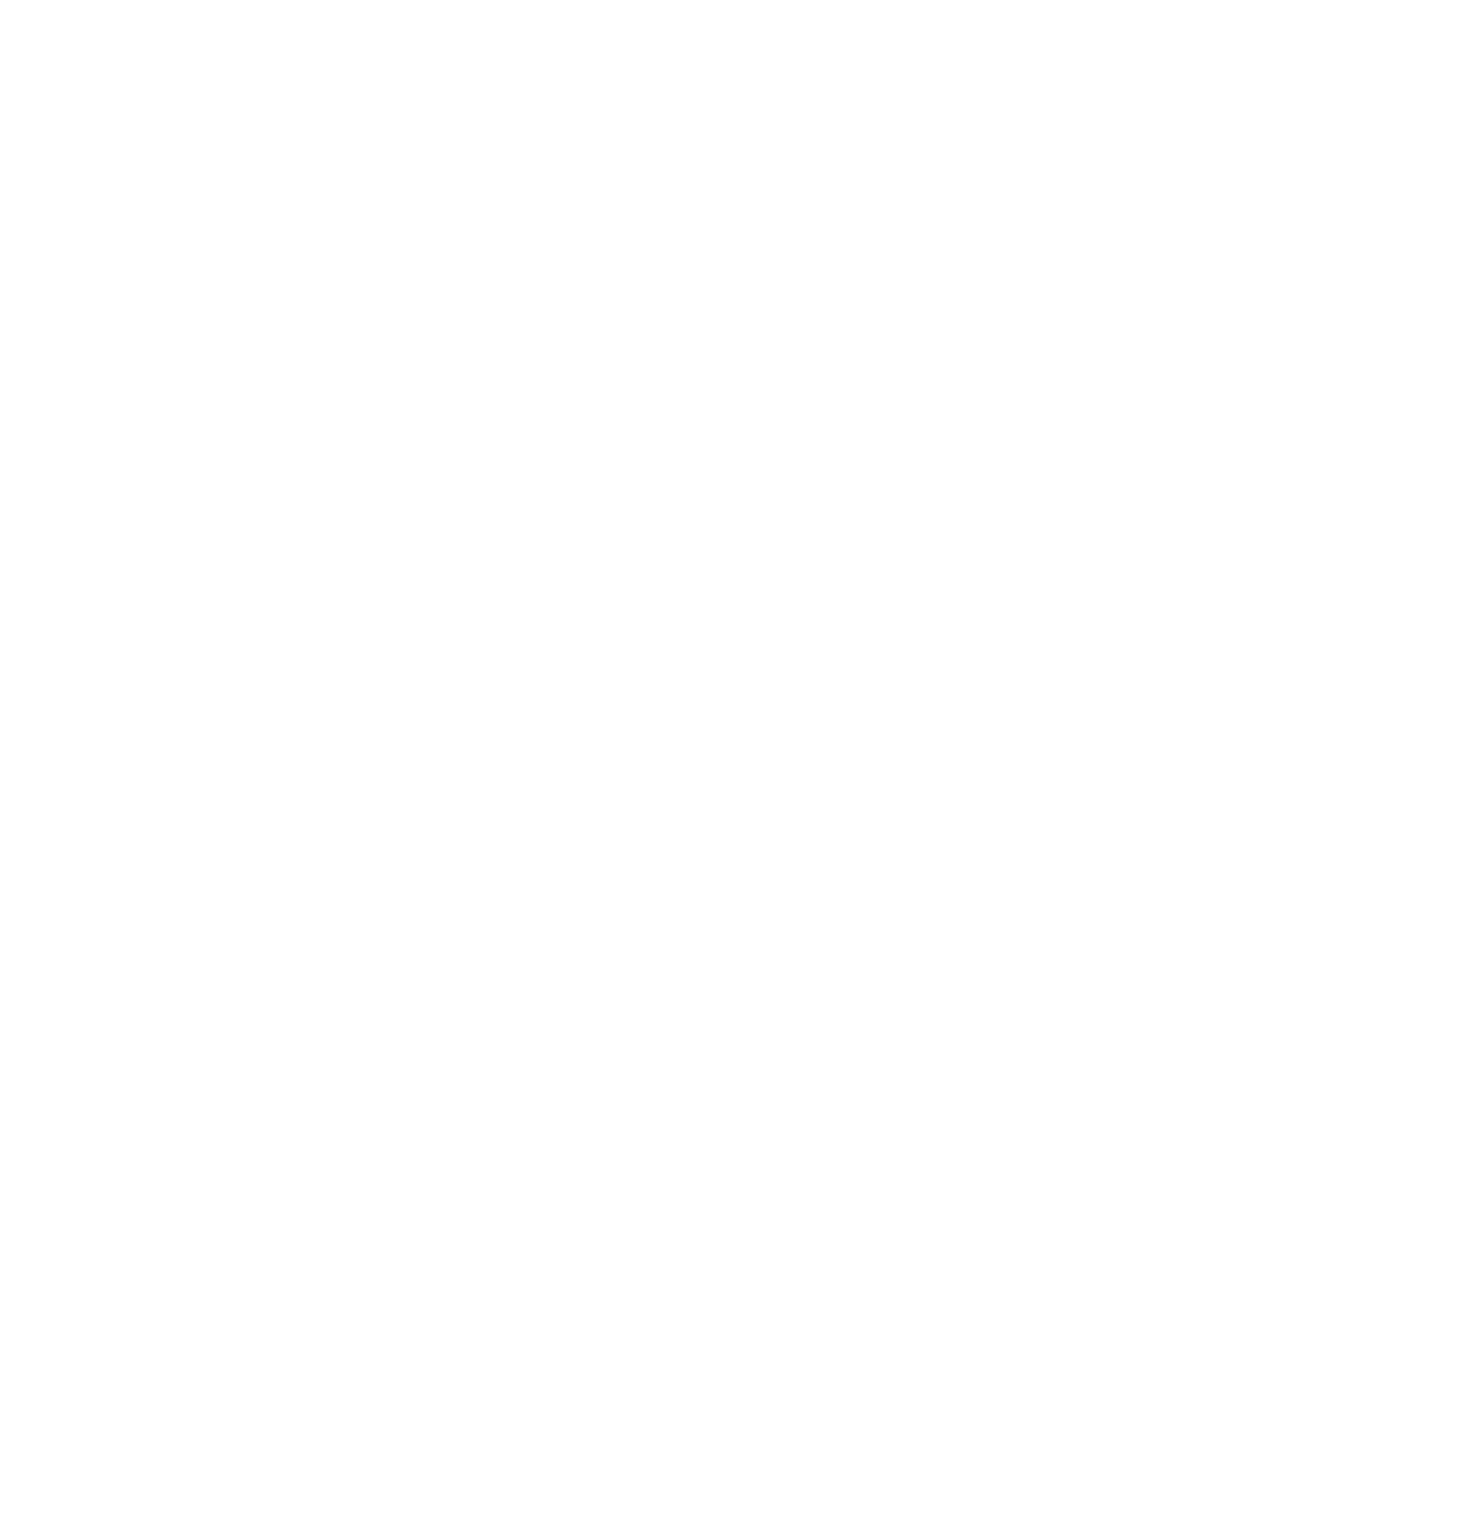 AMN Healthcare Services logo pour fonds sombres (PNG transparent)